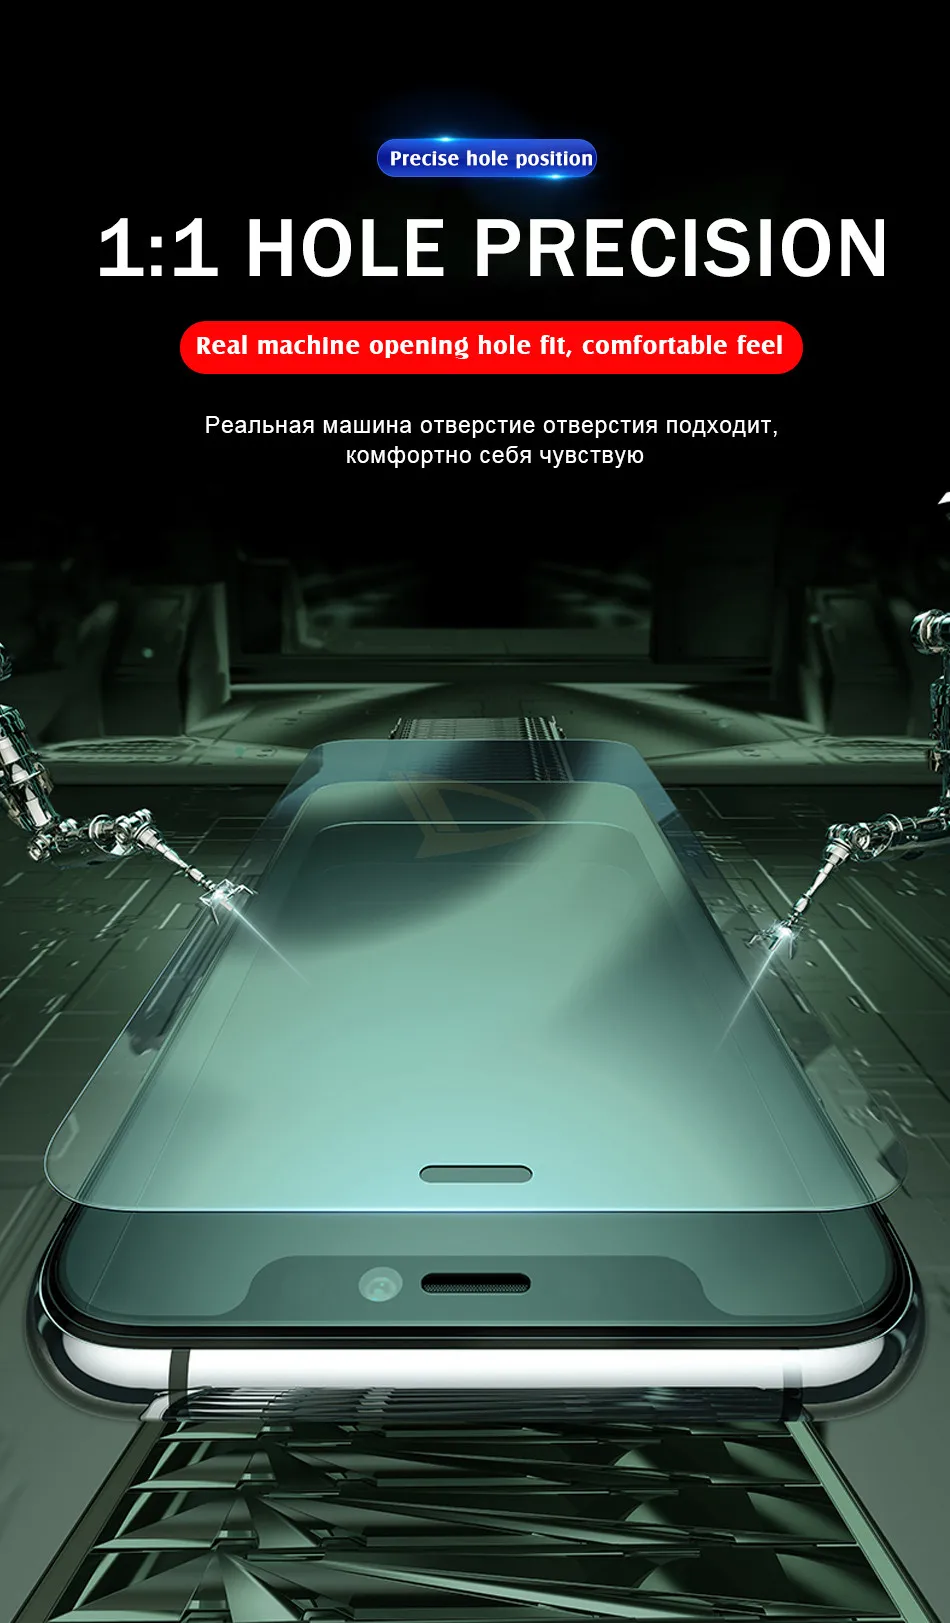 1-4 шт 10H защитное закаленное стекло для iphone 11 Pro X XR XS Max Защитная пленка для экрана для iphone 8 7 6 6s PLus покрытие стекло